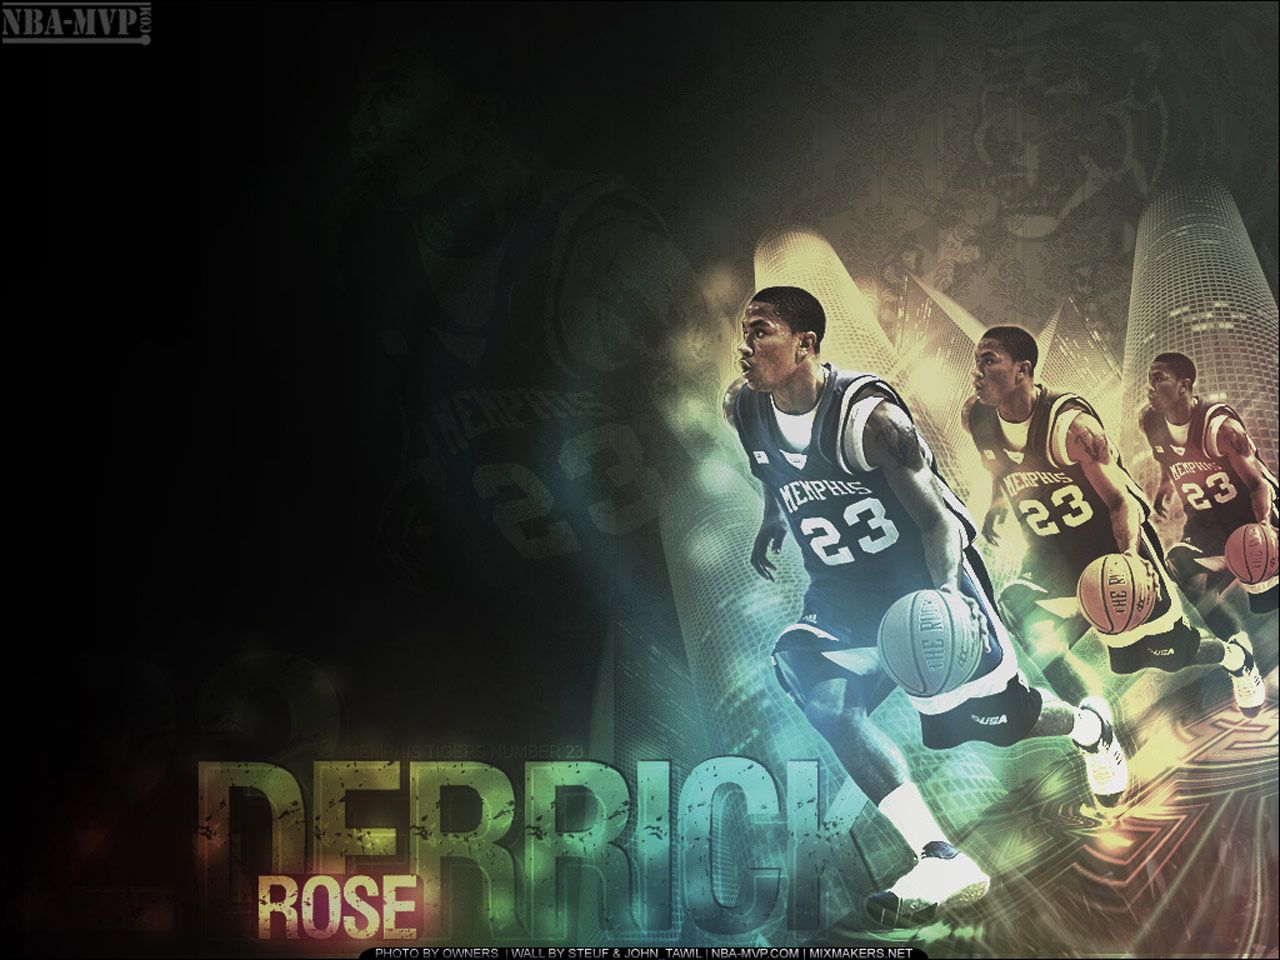 Derrick Rose Memphis Tigers Wallpaper Basketball Wallpapers at